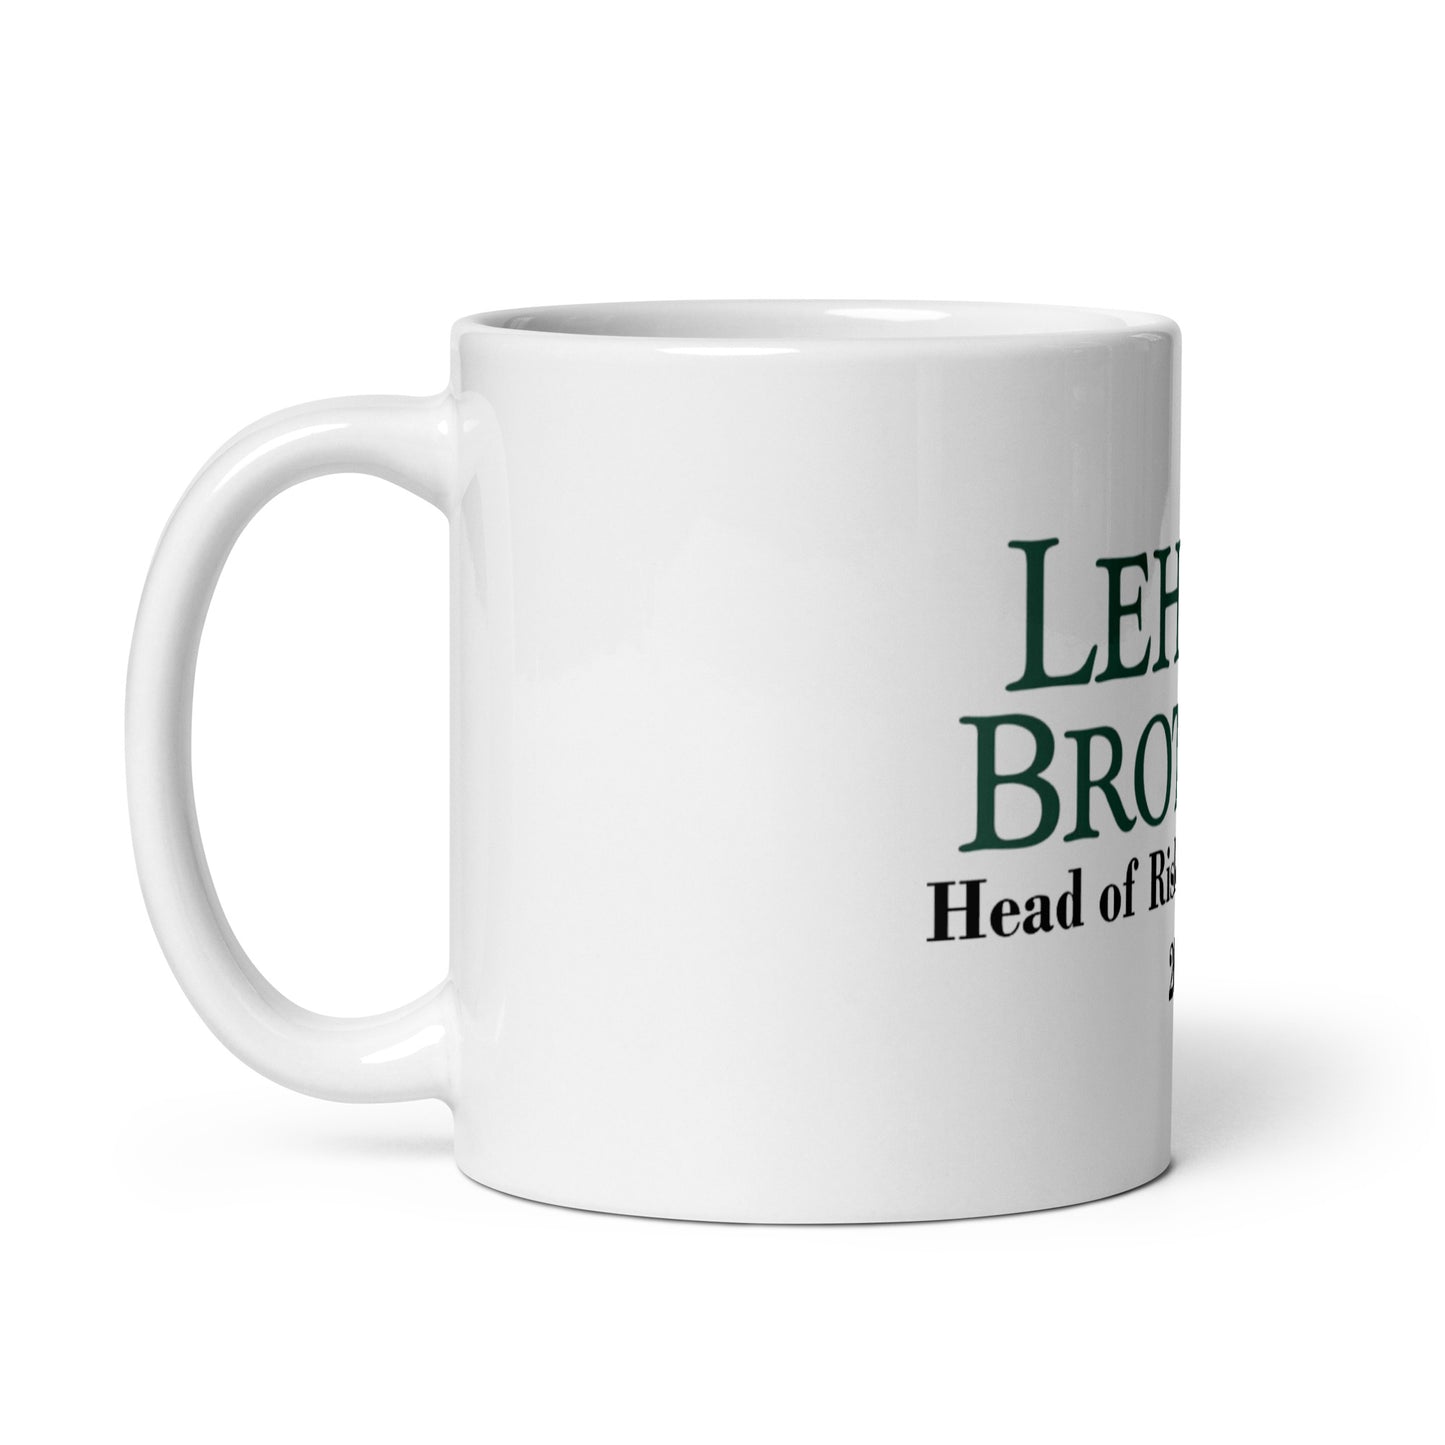 Lehman Brothers Mug